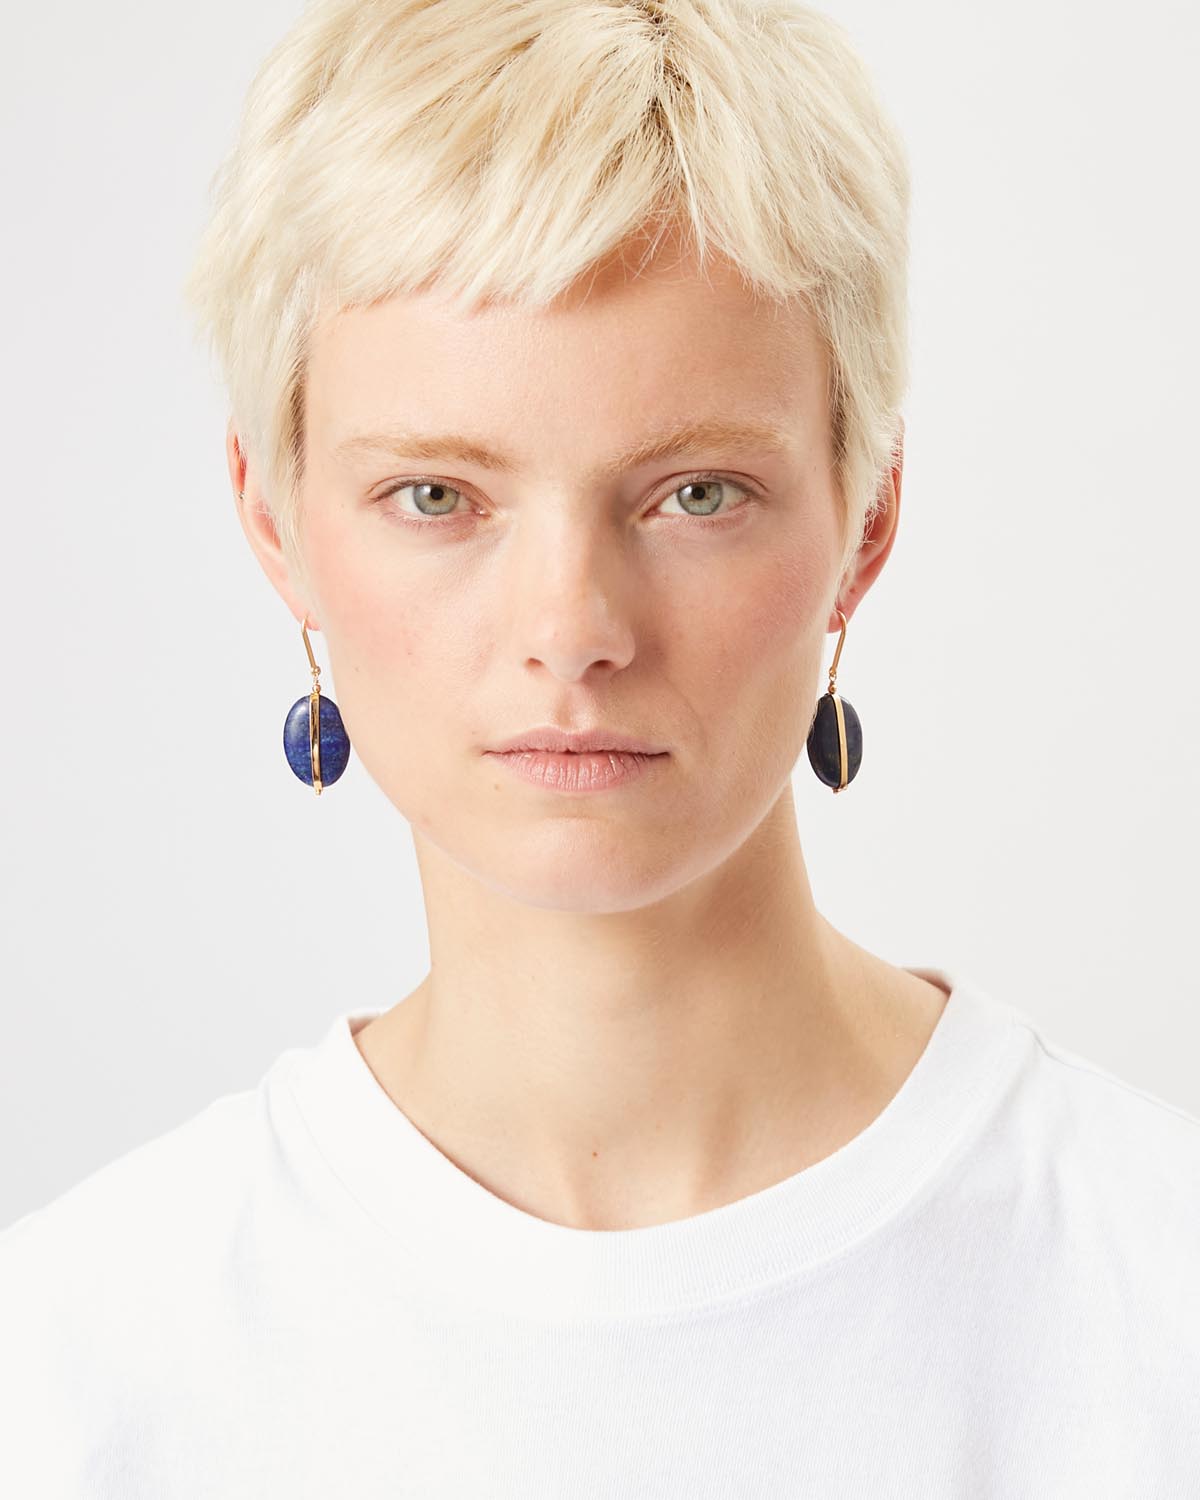 Stones earrings Woman Navy blue 2